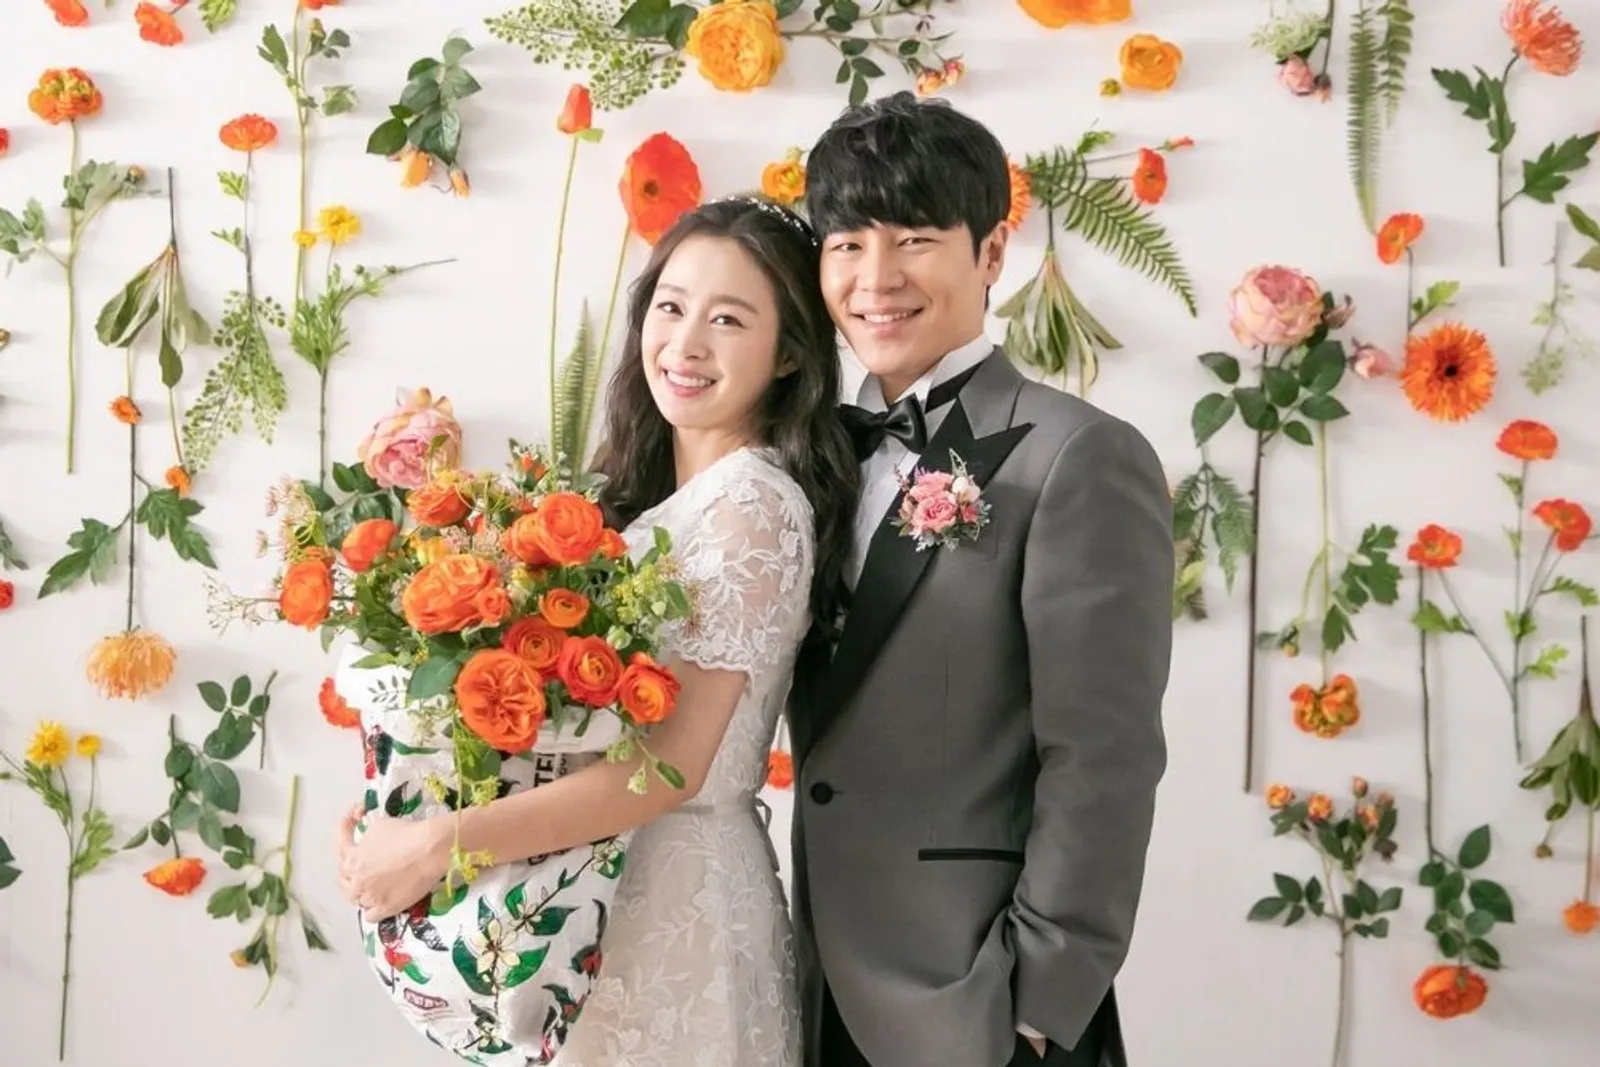 Suzy dan Aktris Lainnya yang Tampil Memesona ketika 'Menikah' di 2020